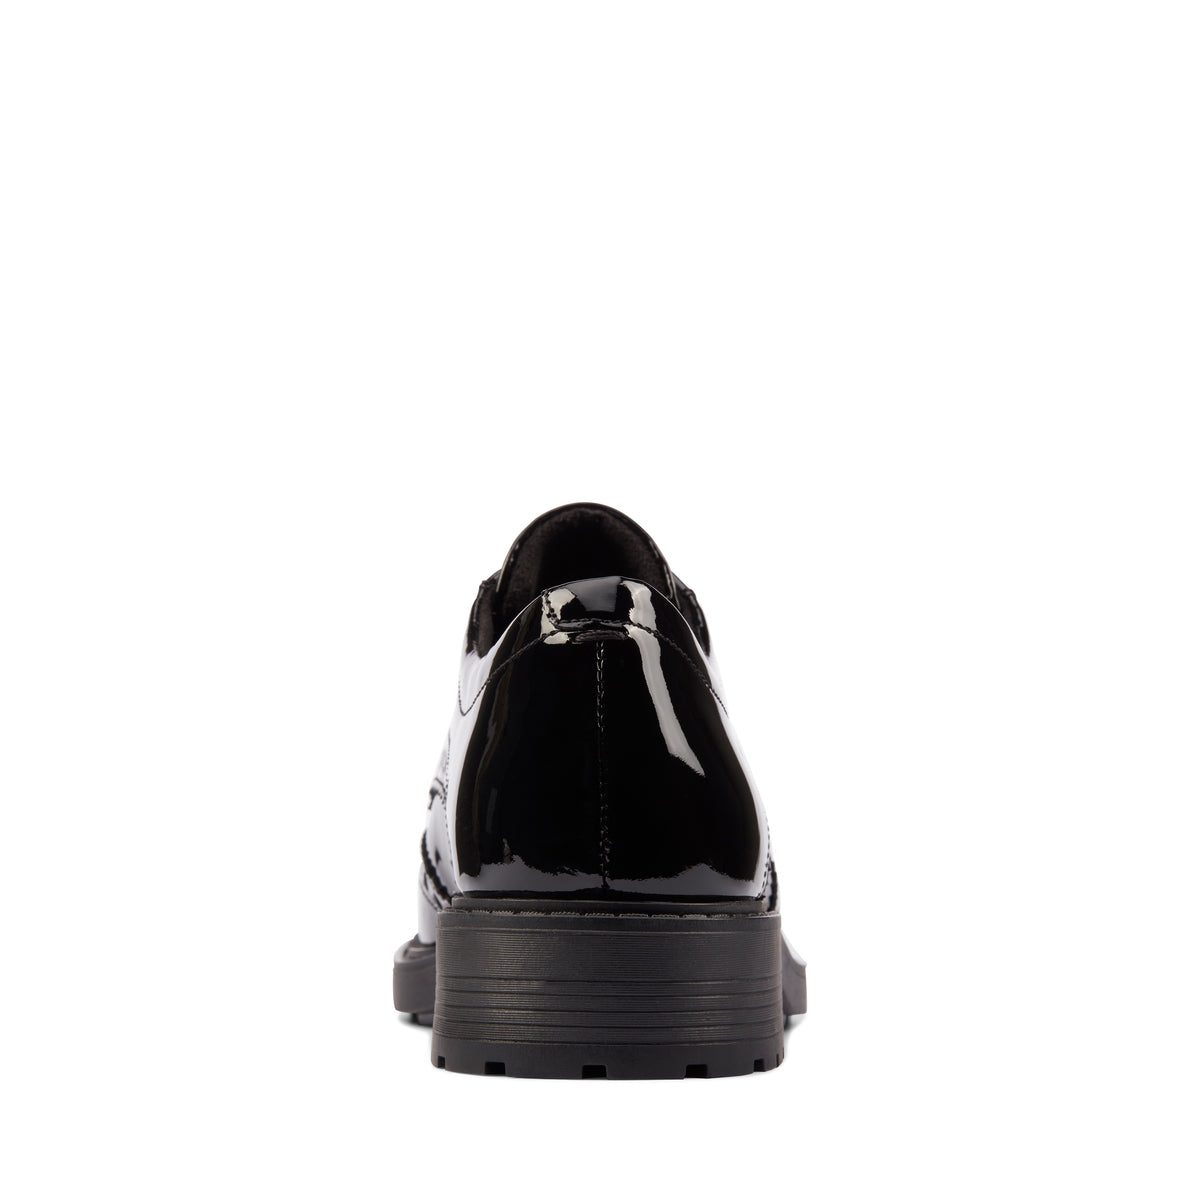 Zapatos Oxford De La Marca Clarks Para Mujer Modelo Orinoco Limit Black Patent En Color Negro